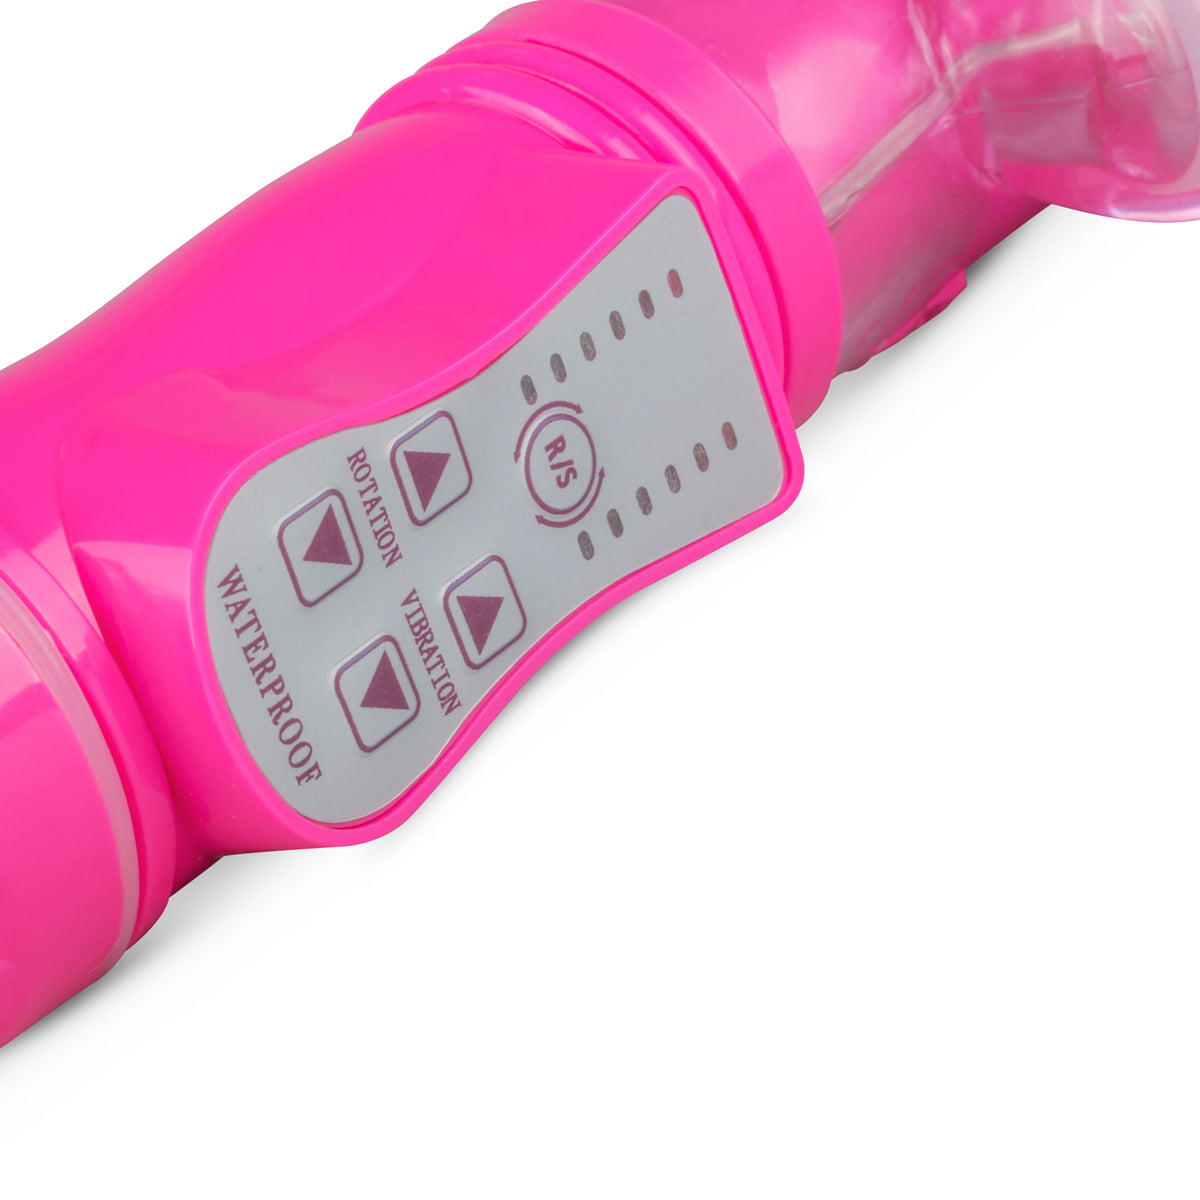 Stotende rabbit vibrator – Roze